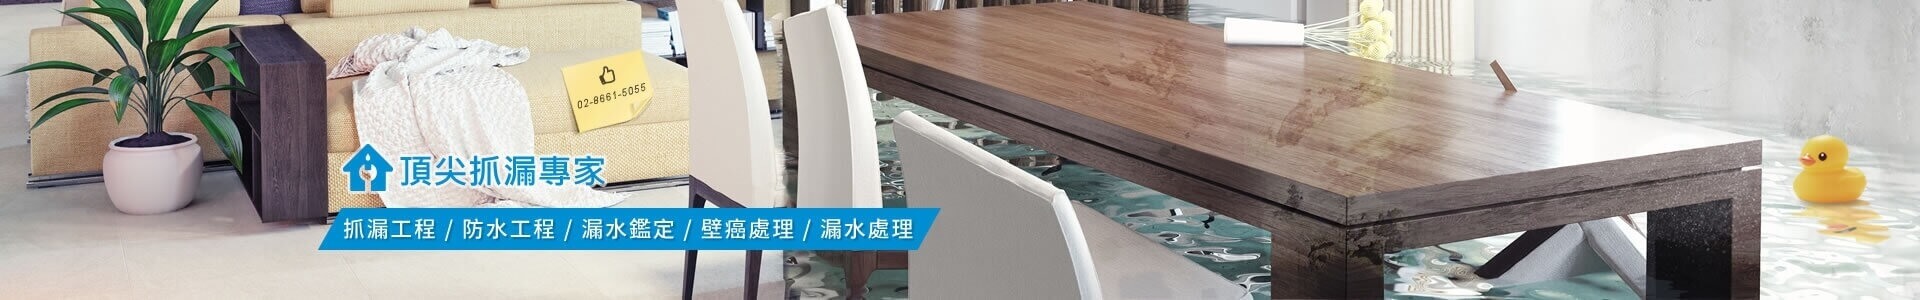 台北抓漏防水工程專家-顧客滿意推薦著名頂級品牌